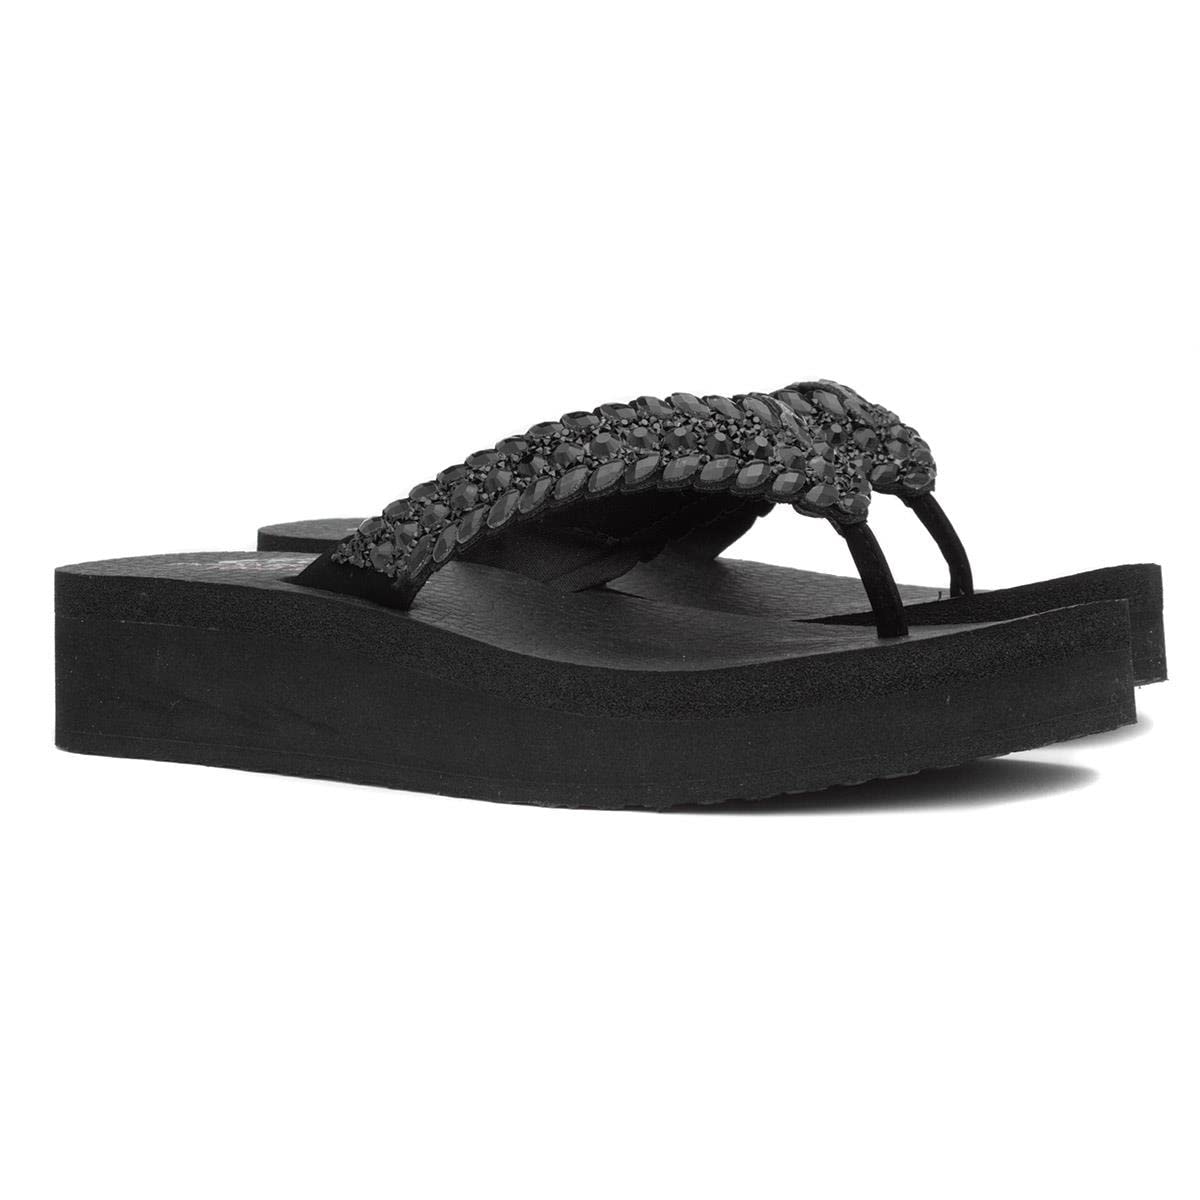 SKECHERS(スケッチャーズ) Women Sandal, Black, 25.0 cm